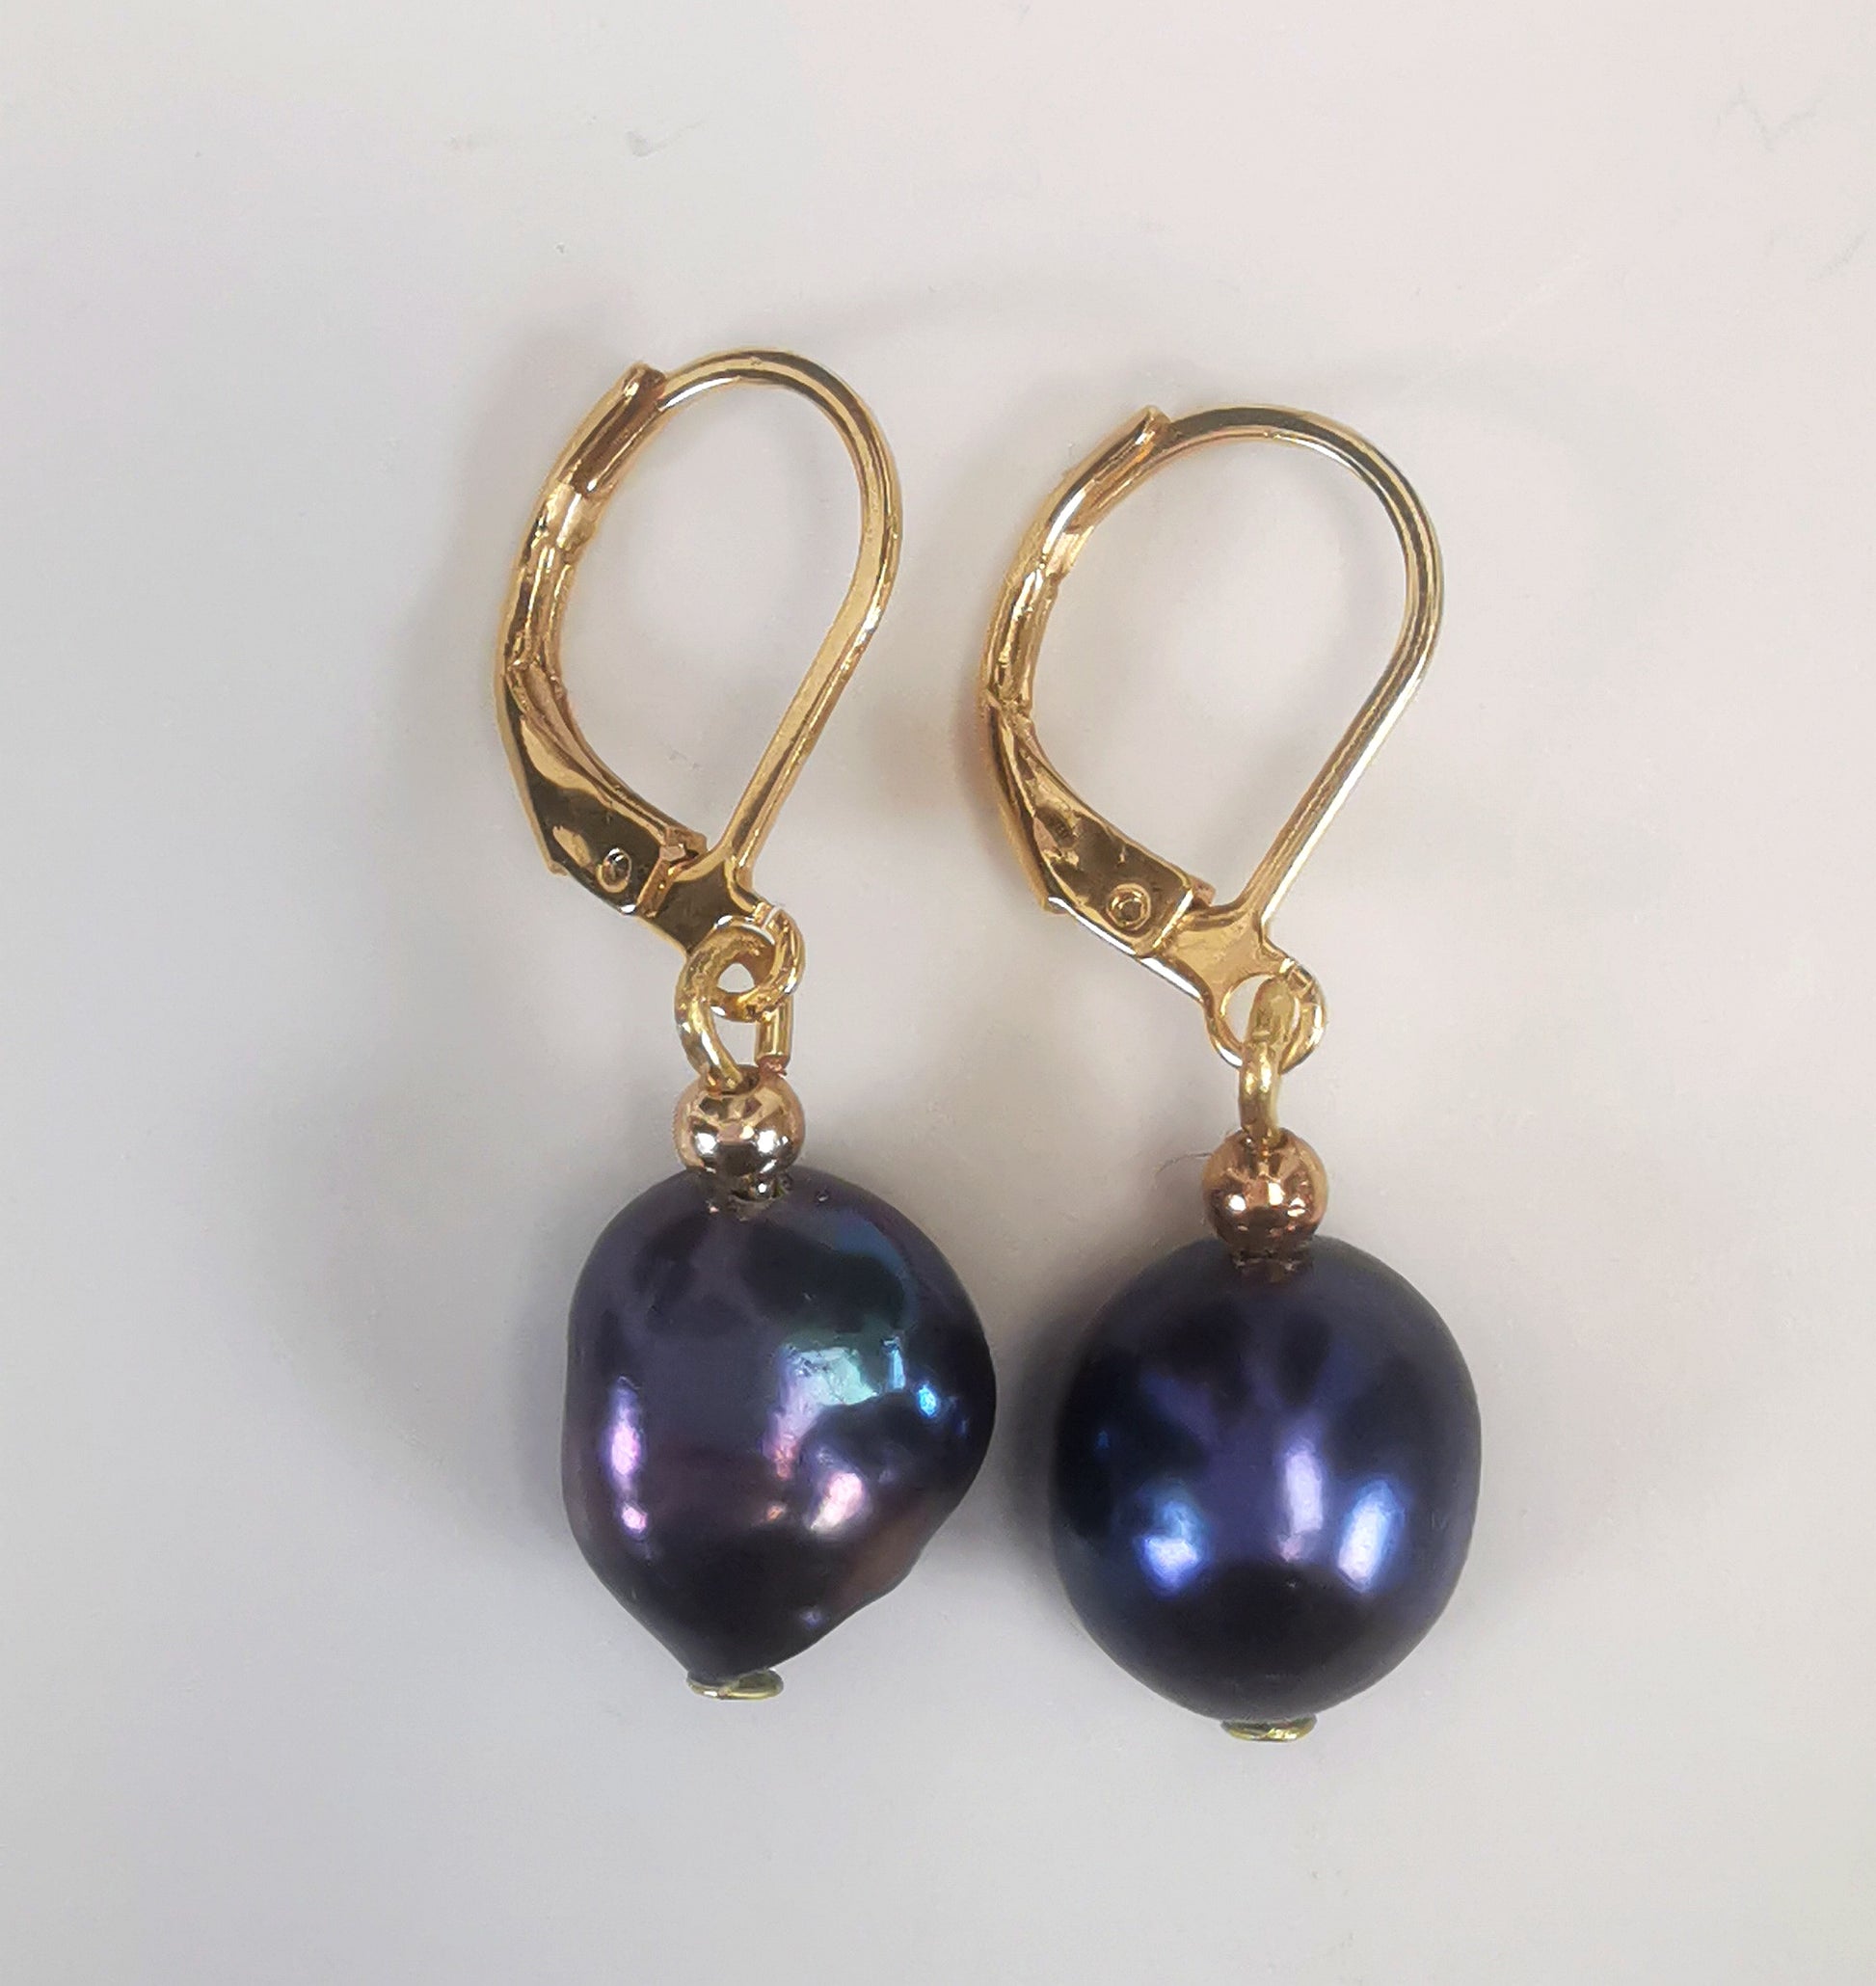 Boucles d'oreilles perles de culture noires baroques 10-12mm montées sur dormeuses plaquées or. Présentées cote à cote, perles en bas, sur un fond blanc. Vue de dessus.